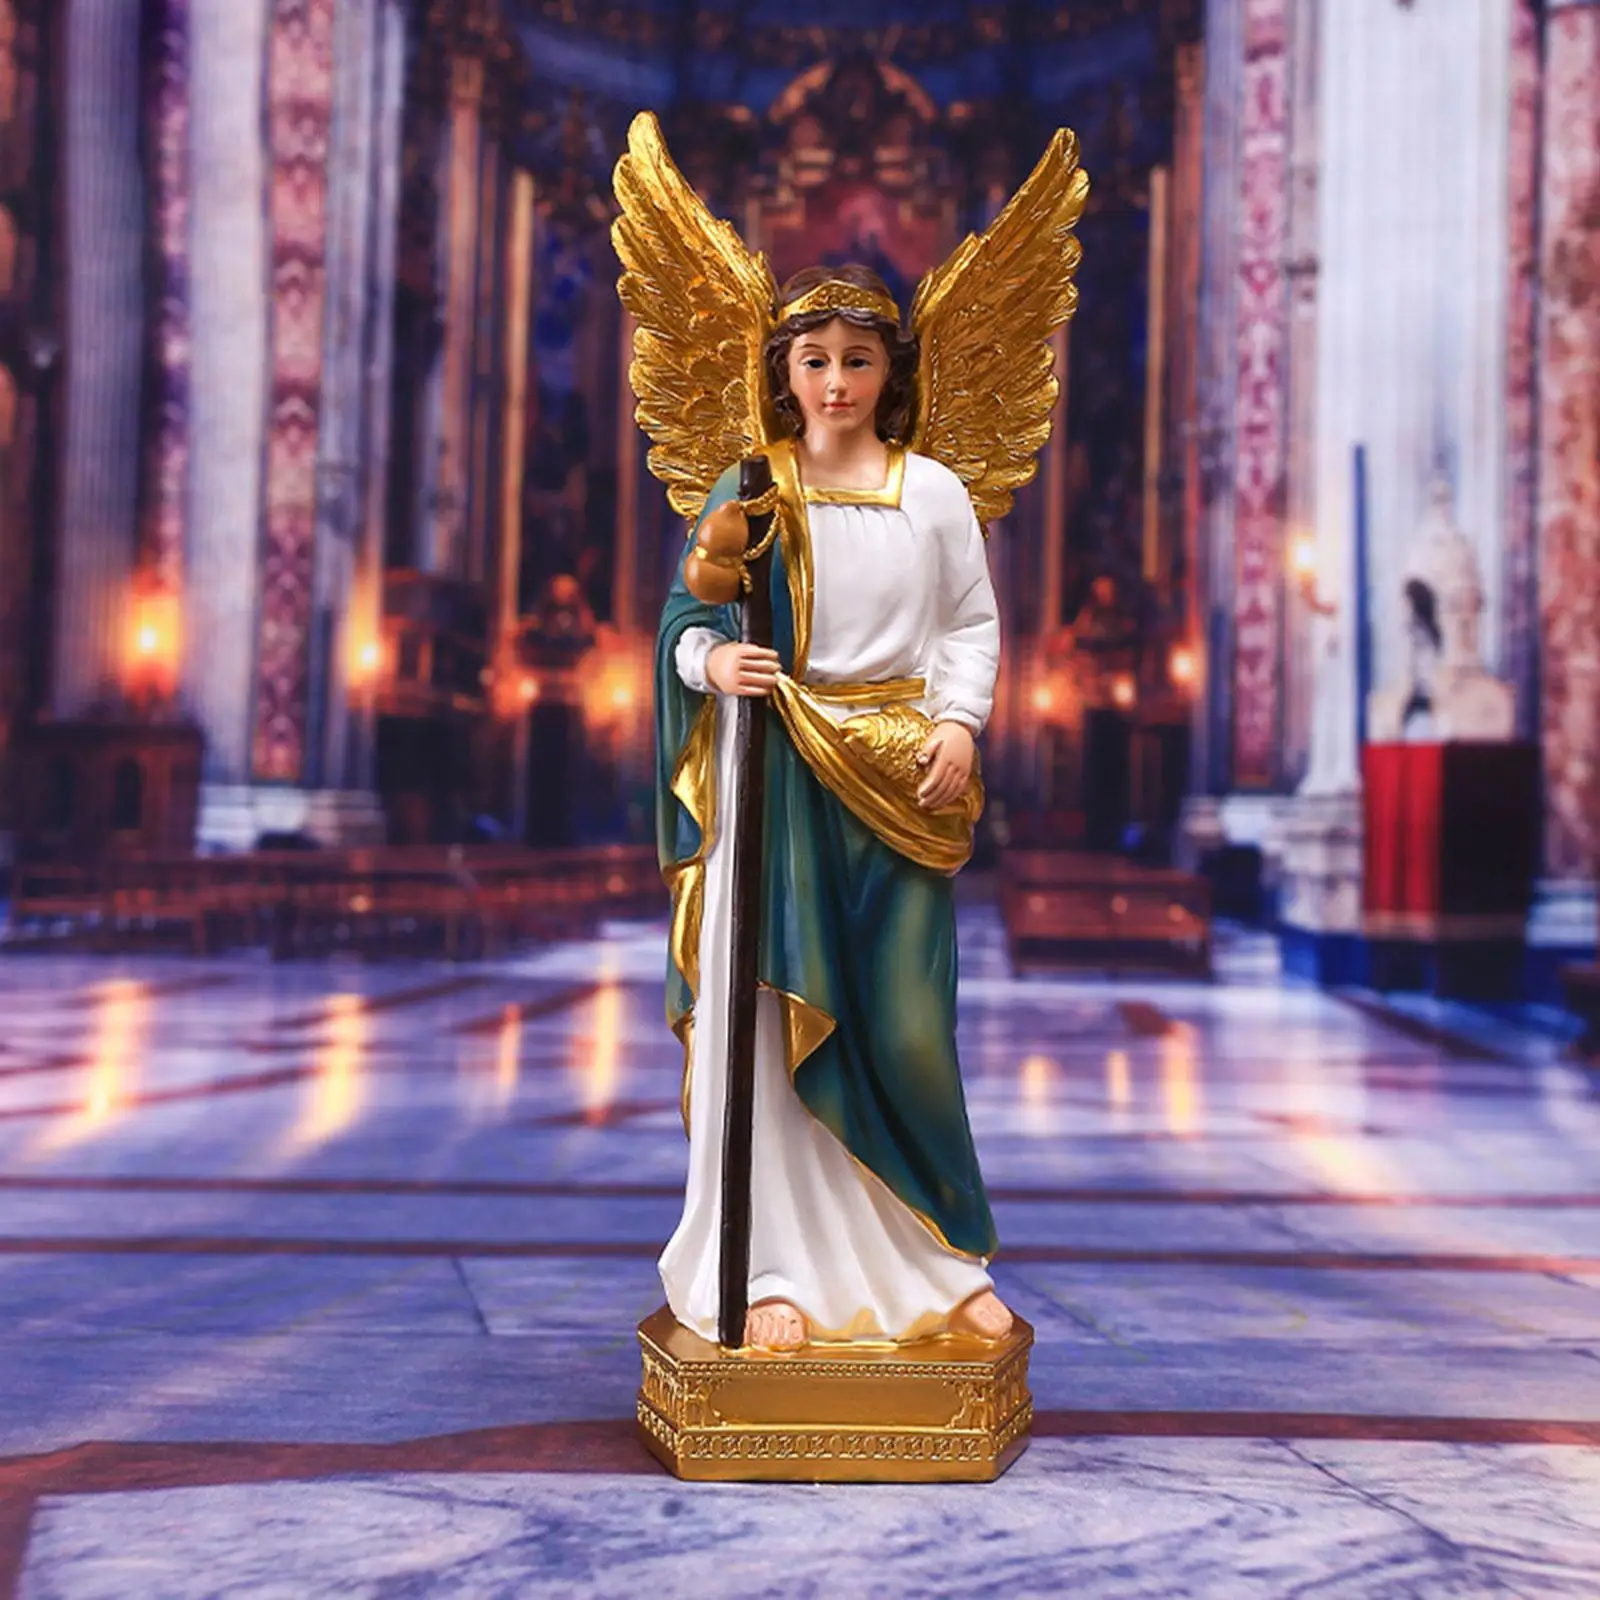 Resin Angel Figurine Religious Mary Statue for Desktop Shelf Living Room Xmas Decor